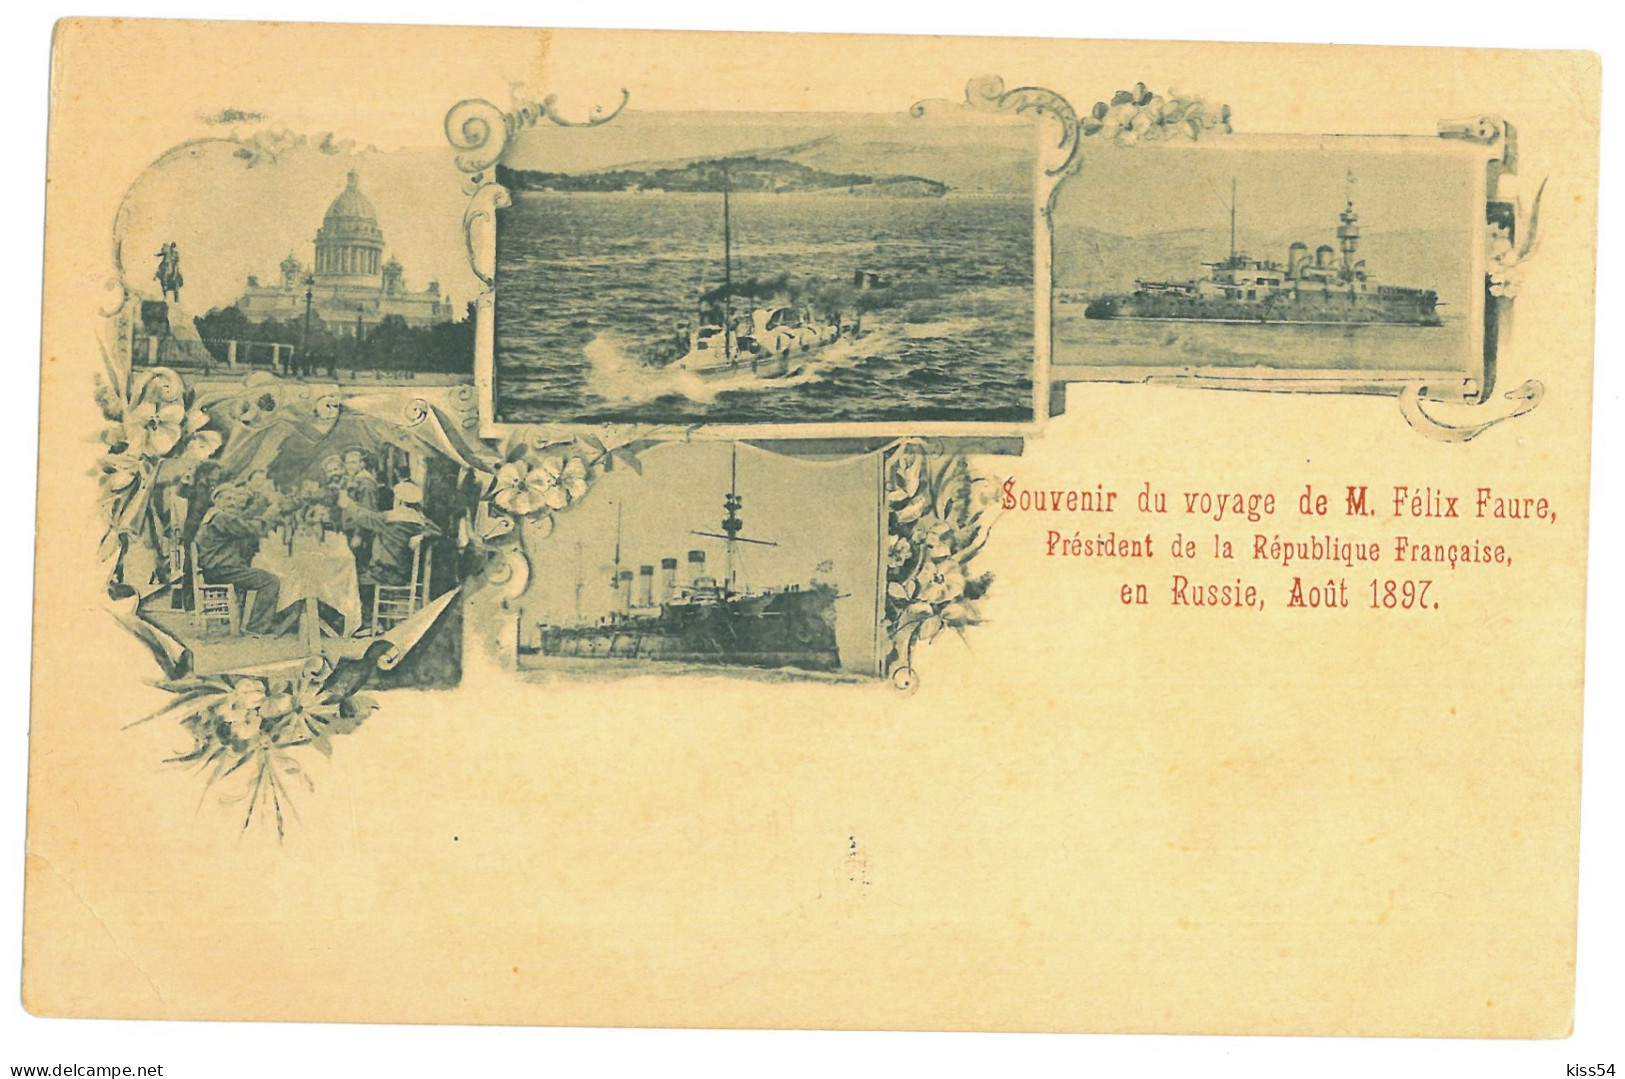 RUS 91 - 21258 SAINT PETERSBURG, Ships, Litho, Russia - Old Postcard - Unused - Russia